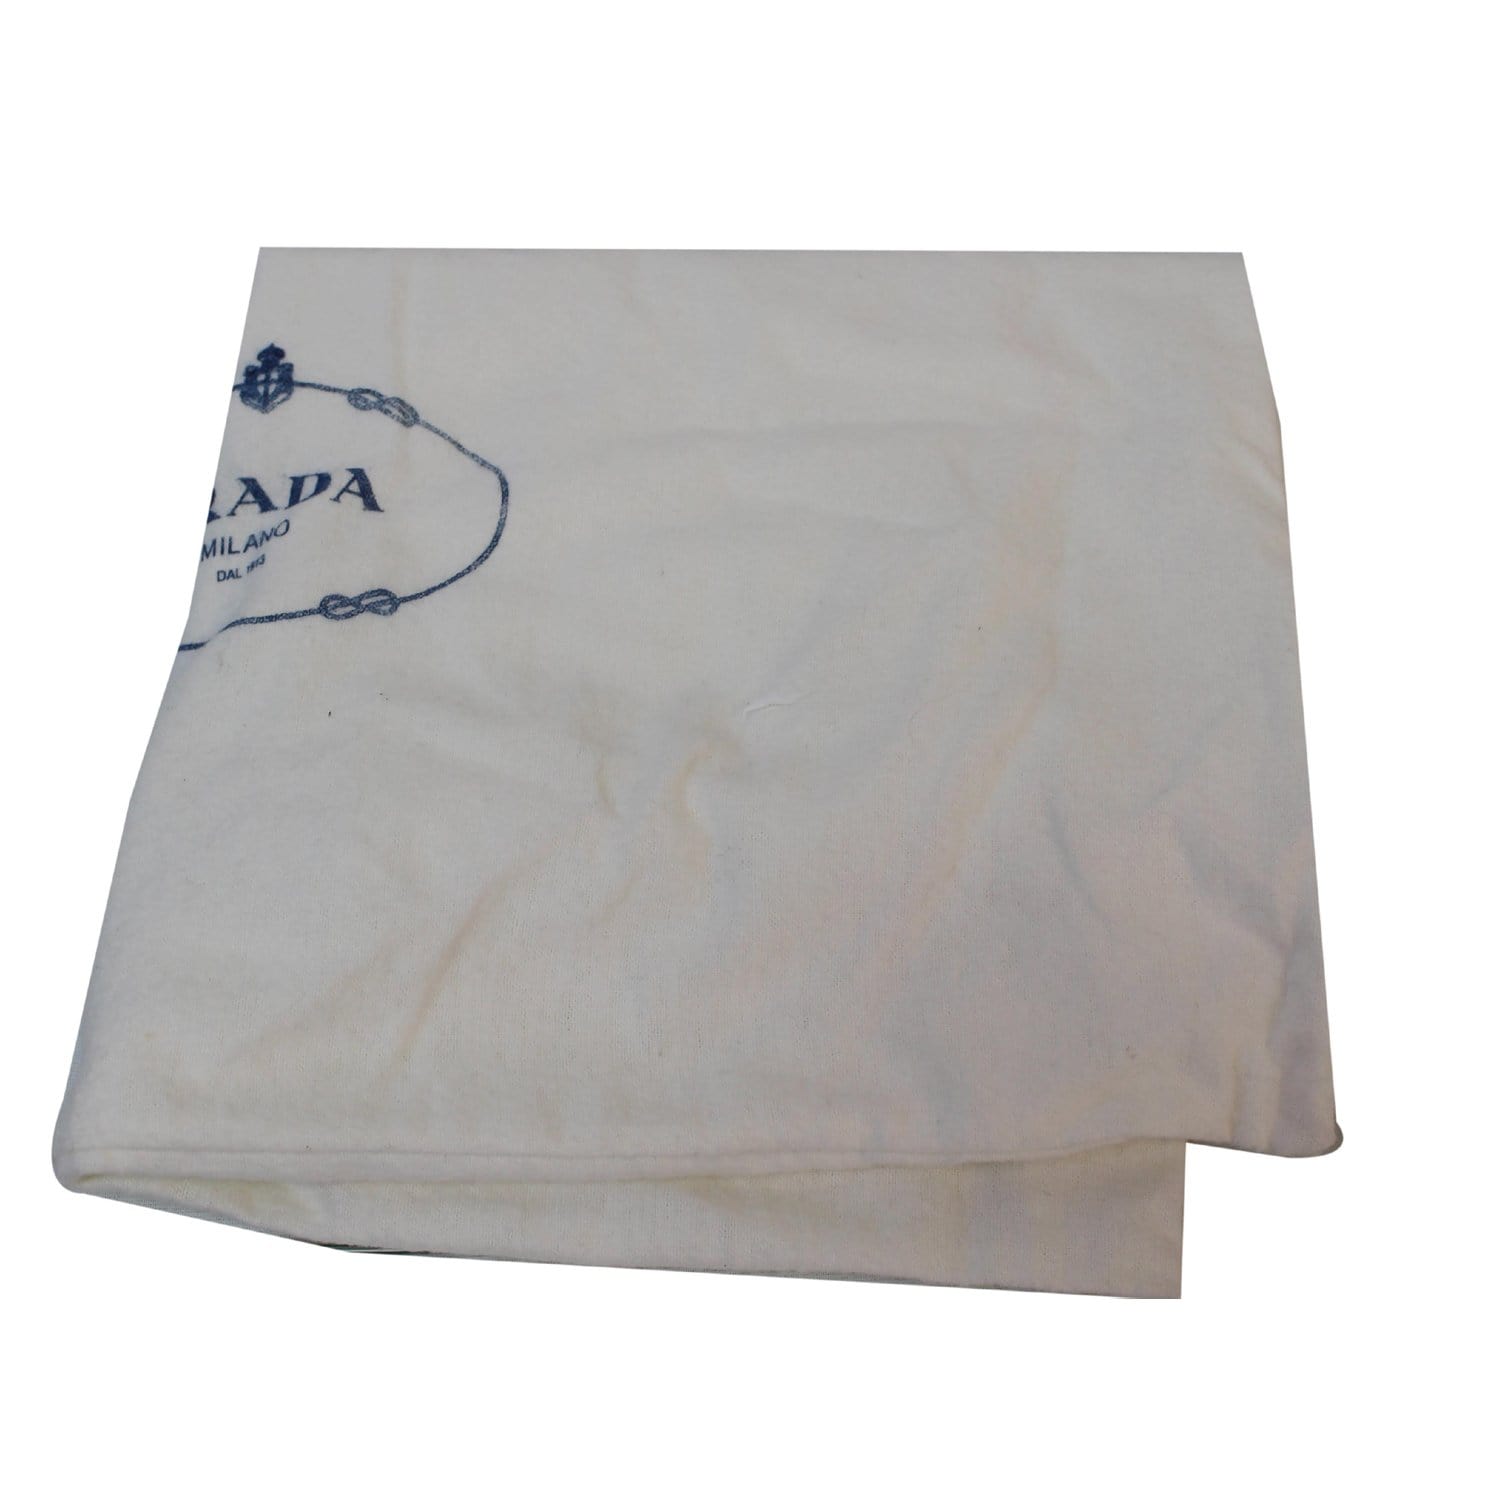 Prada Cervo Lux Shoulder Bag - ShopStyle